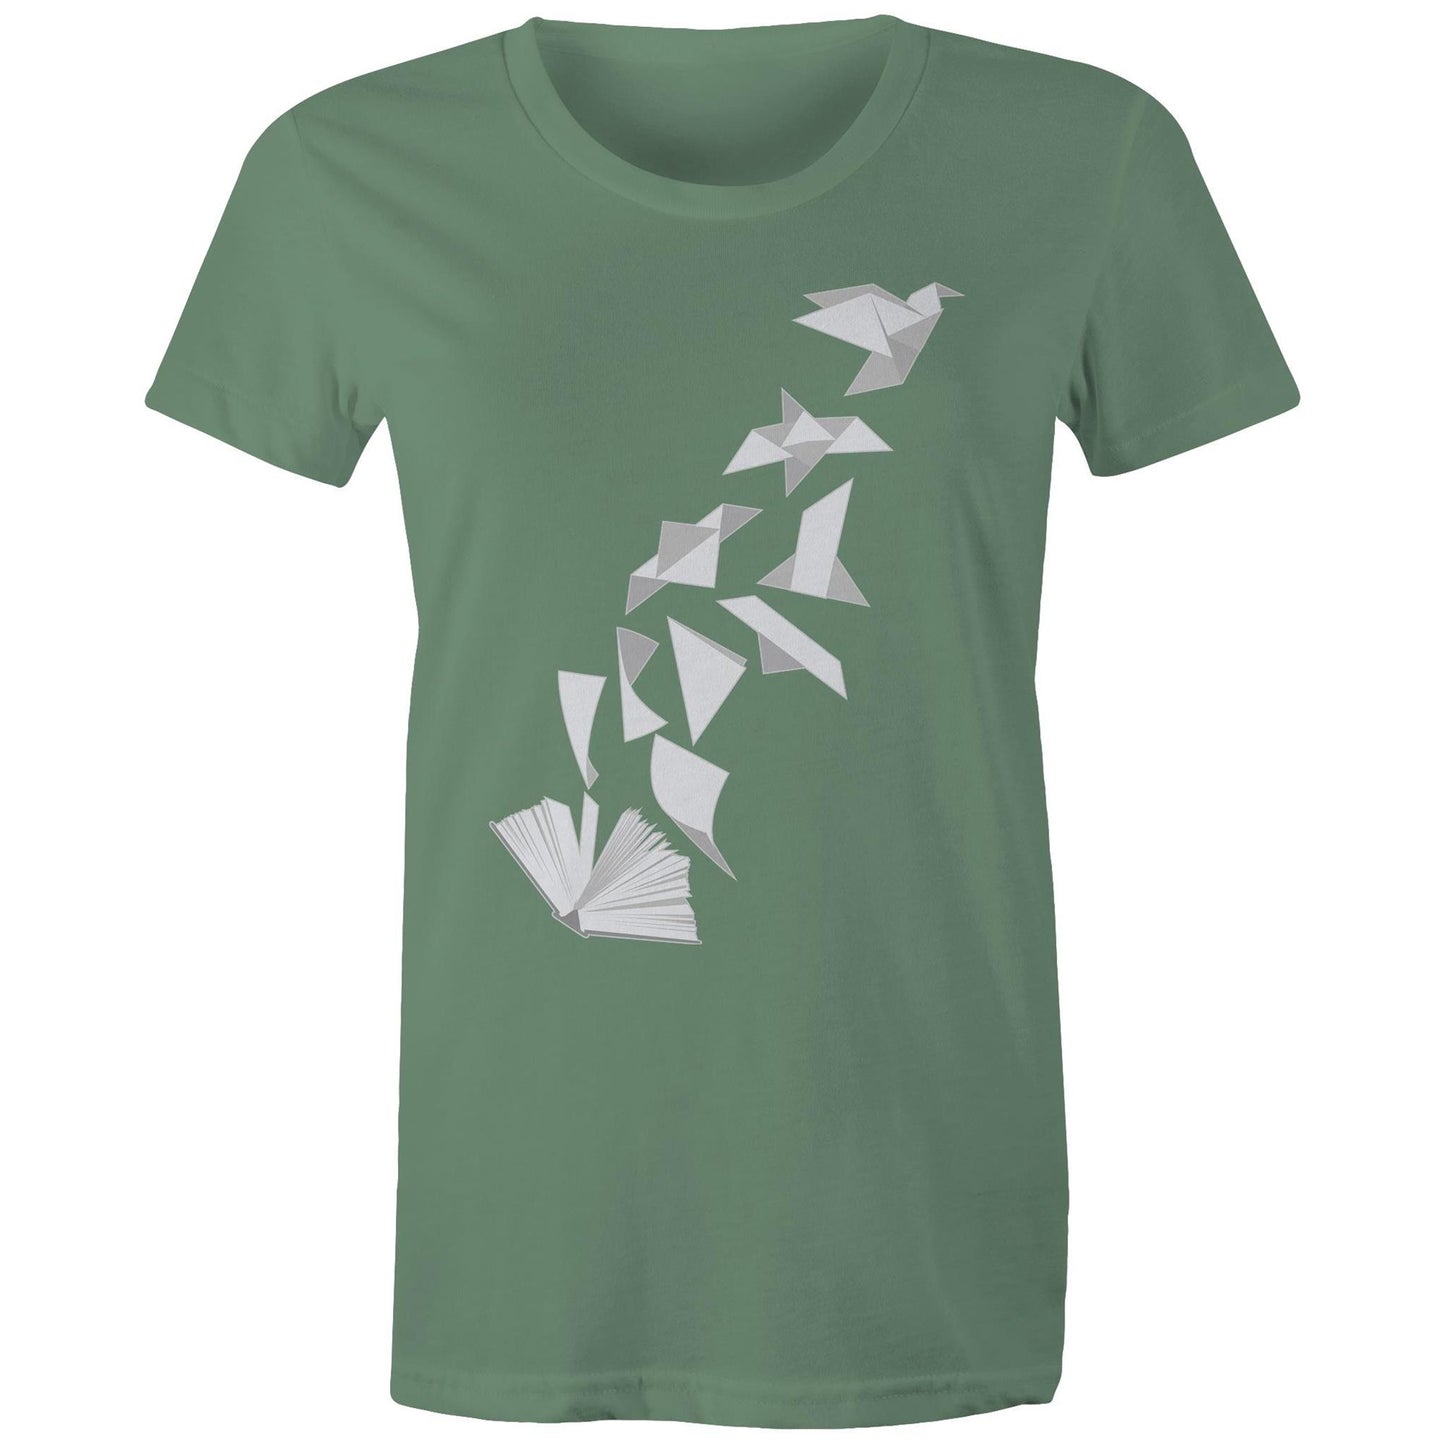 Book to Bird - Women's T-Shirt